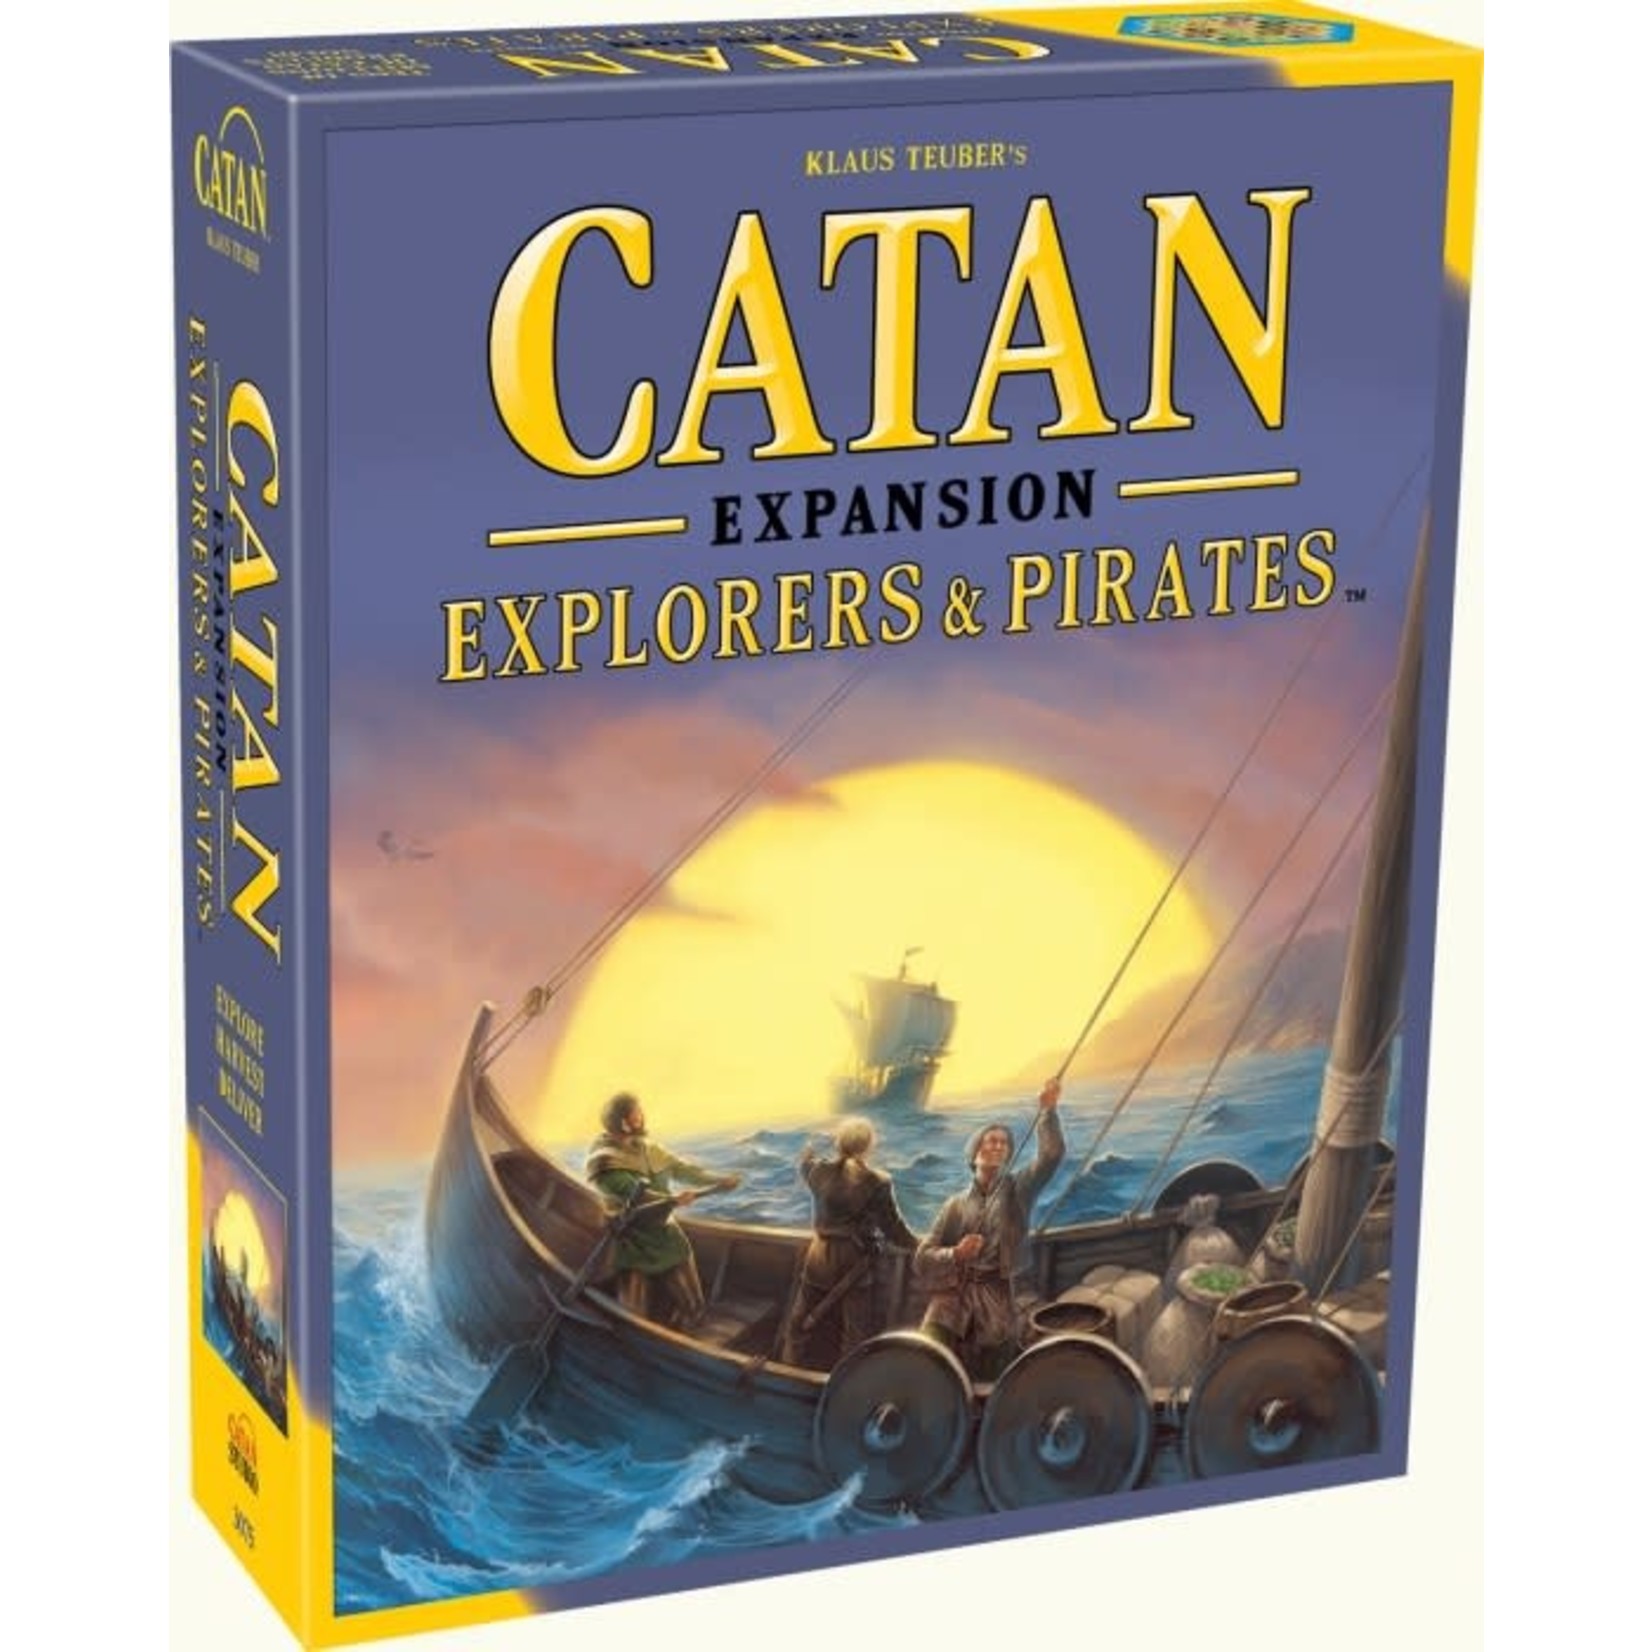 Catan Studio Catan - Explorers & Pirates Expansion